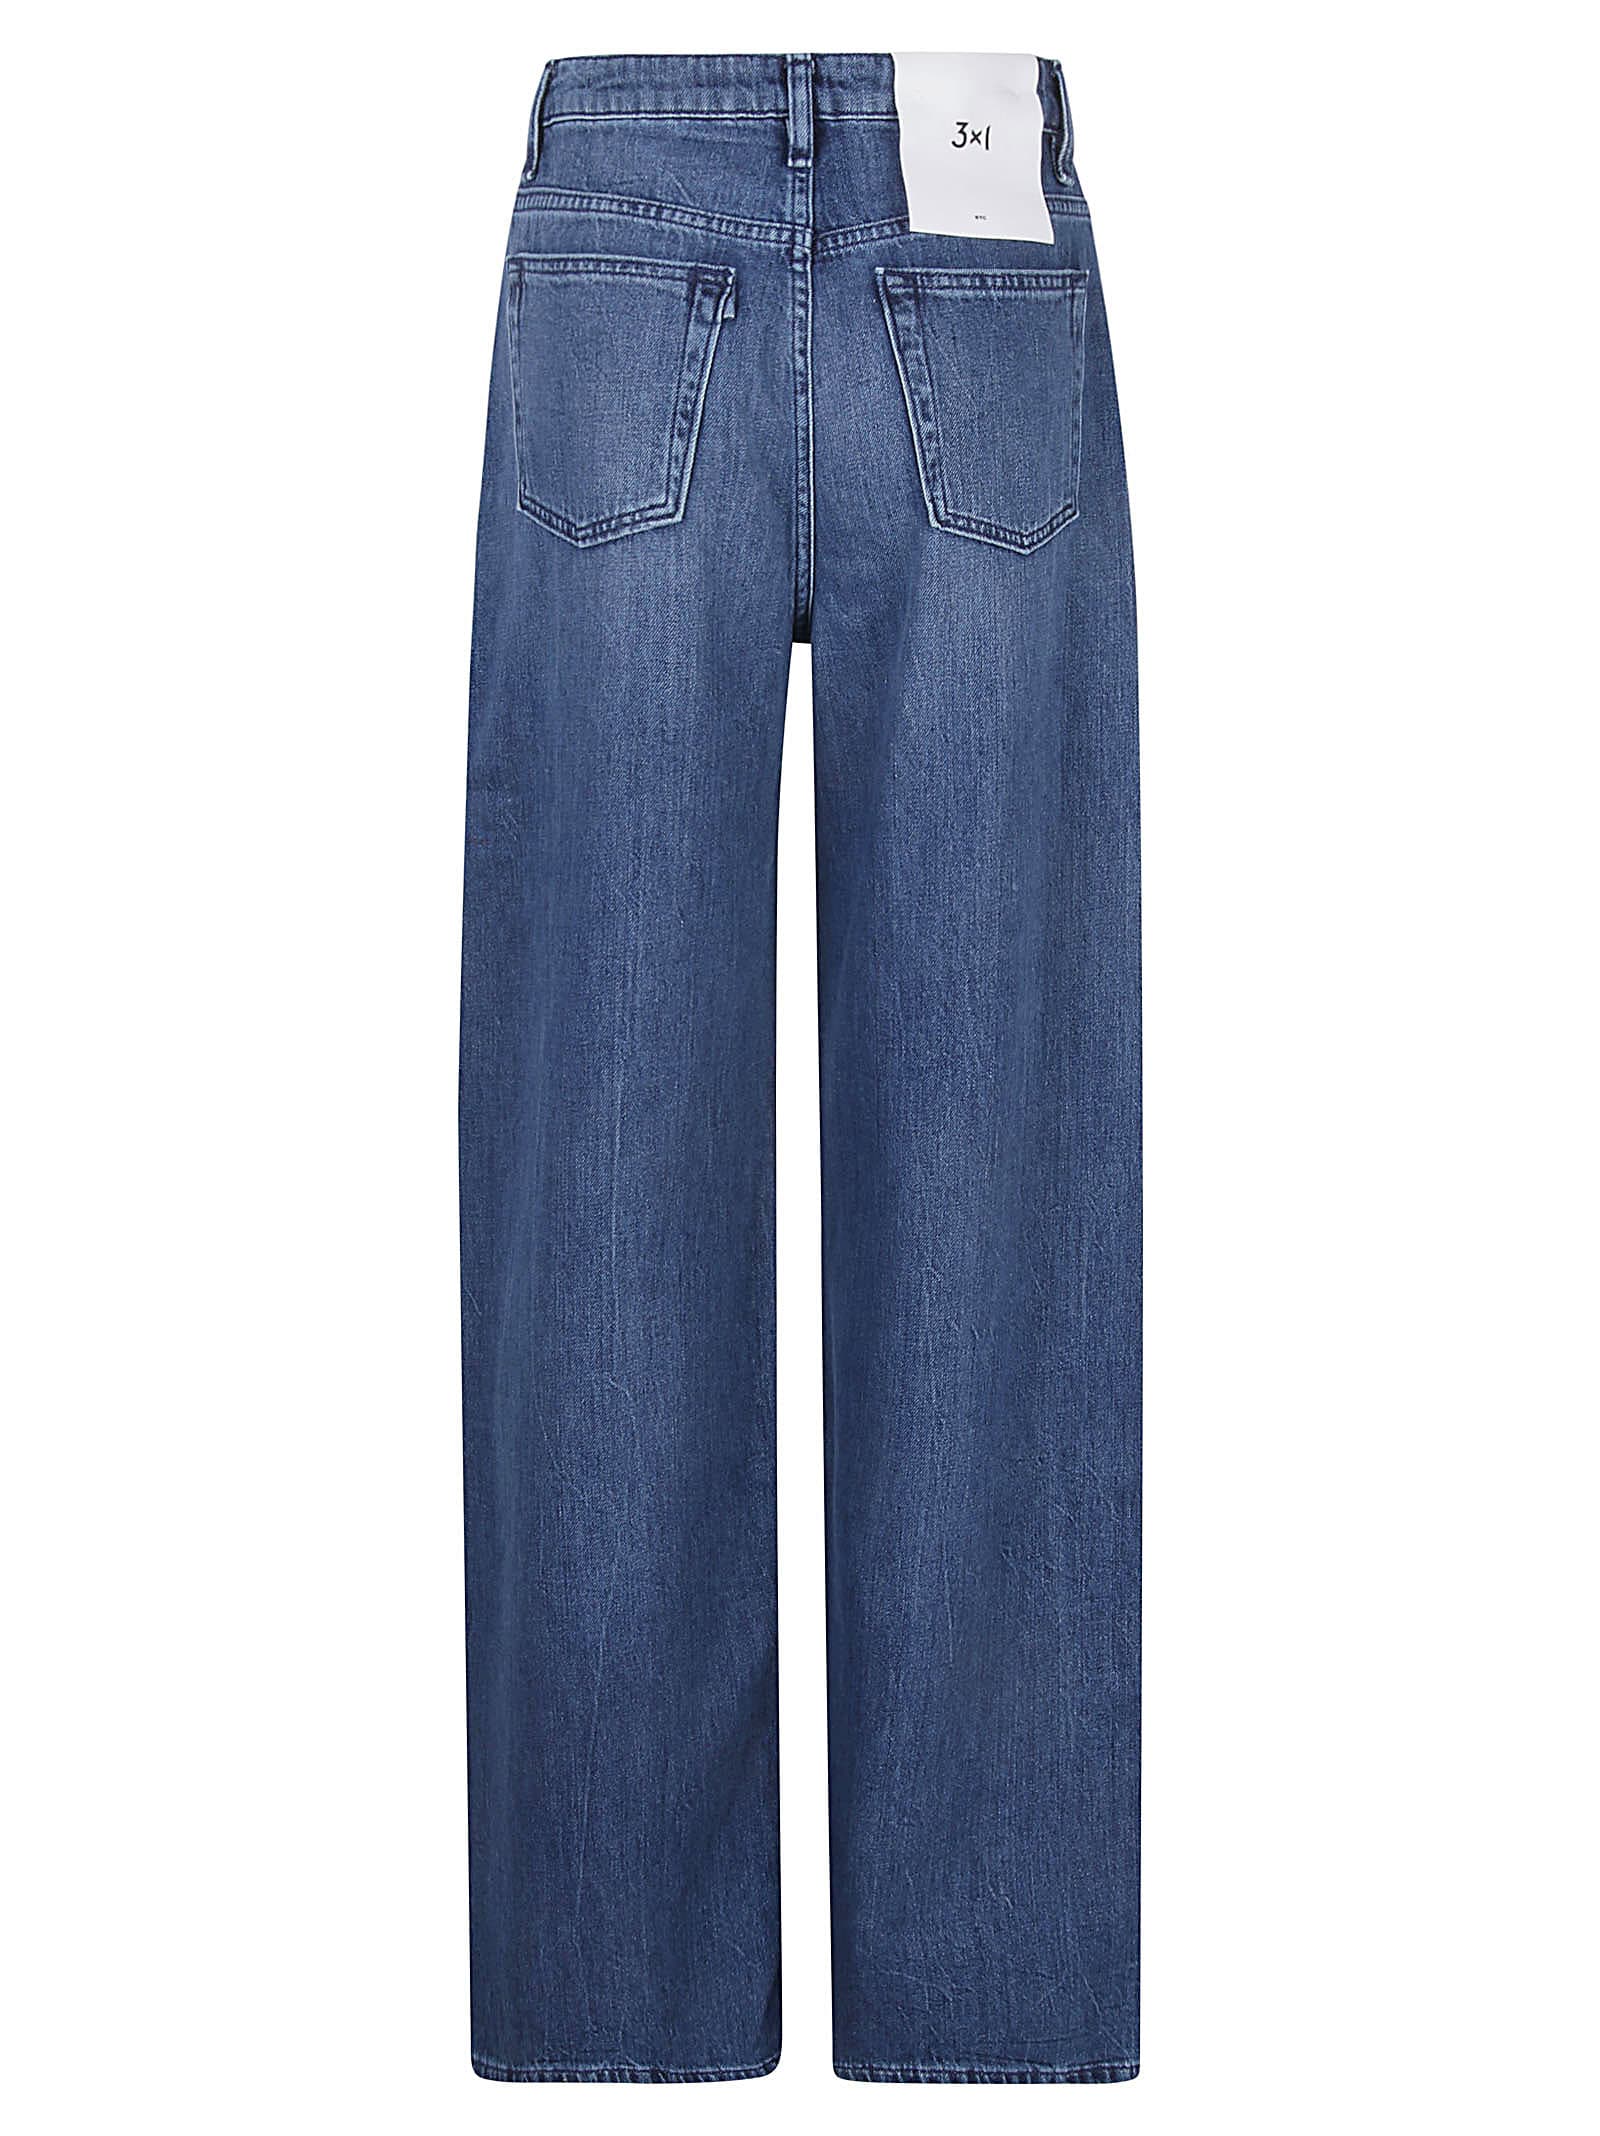 Shop 3x1 Jeans Denim